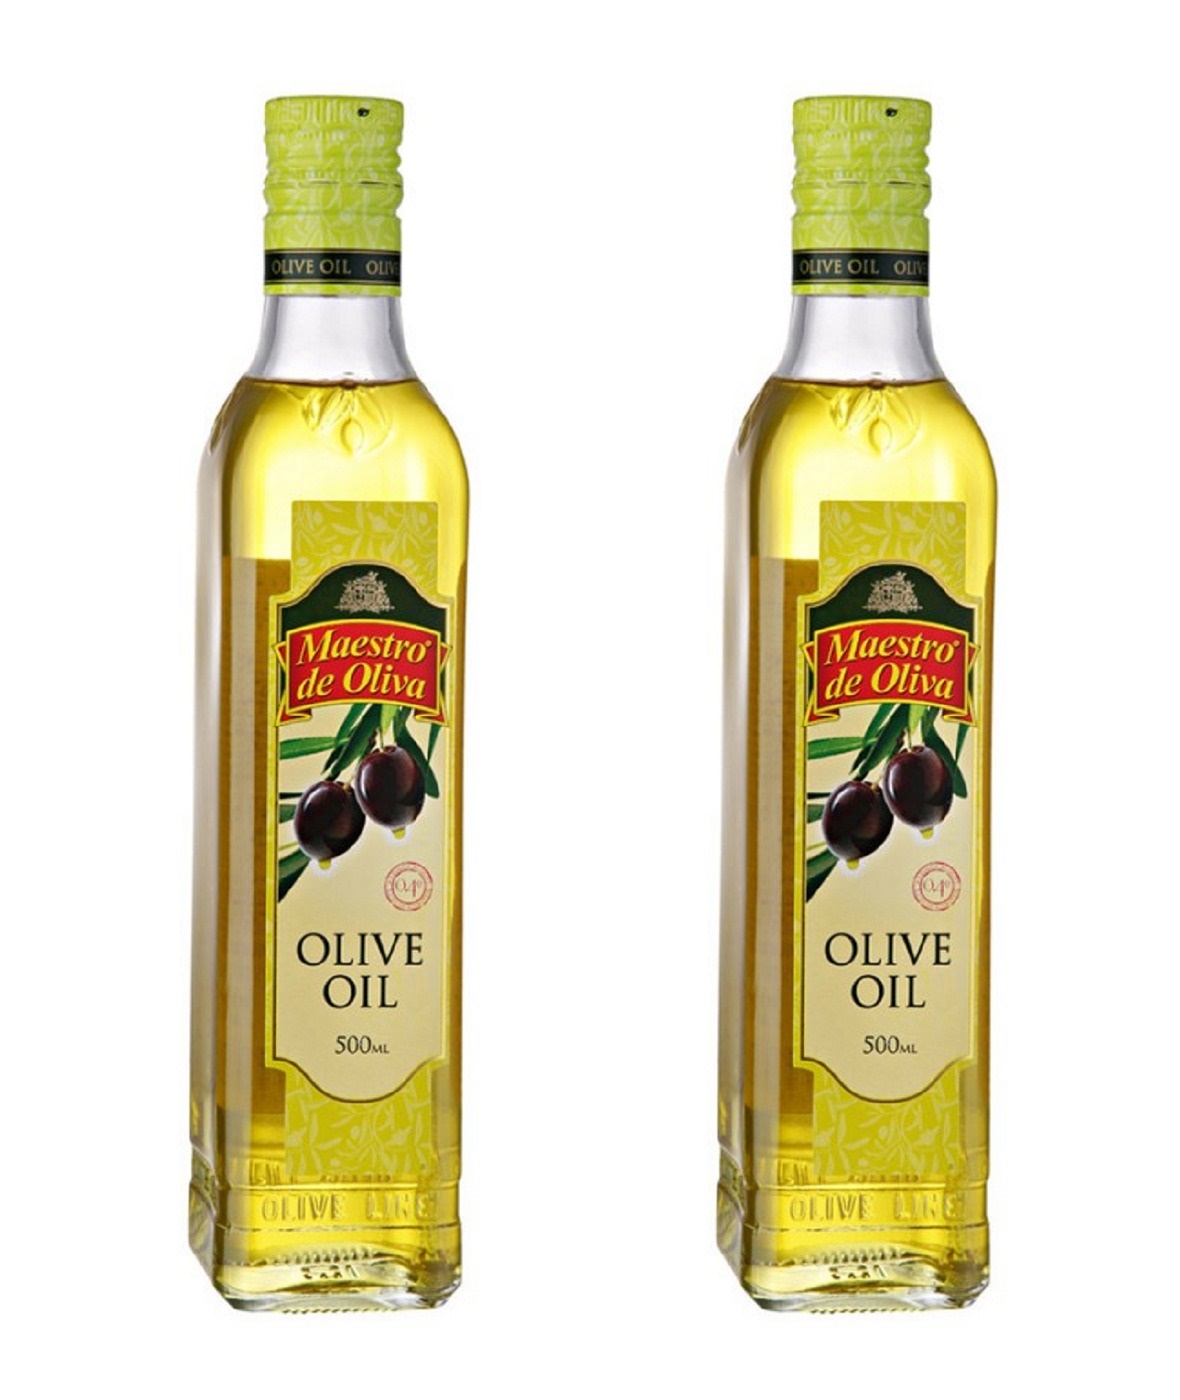 Рафинированное масло холодного отжима. Масло оливковое Maestro de Oliva Extra Virgin нерафинированное, 1 л. Olive Oil нерафинированное масло оливковое. Масло оливковое нерафинированное первого холодного отжима. Olive Oil масло оливковое рафинированное и нерафинированное.